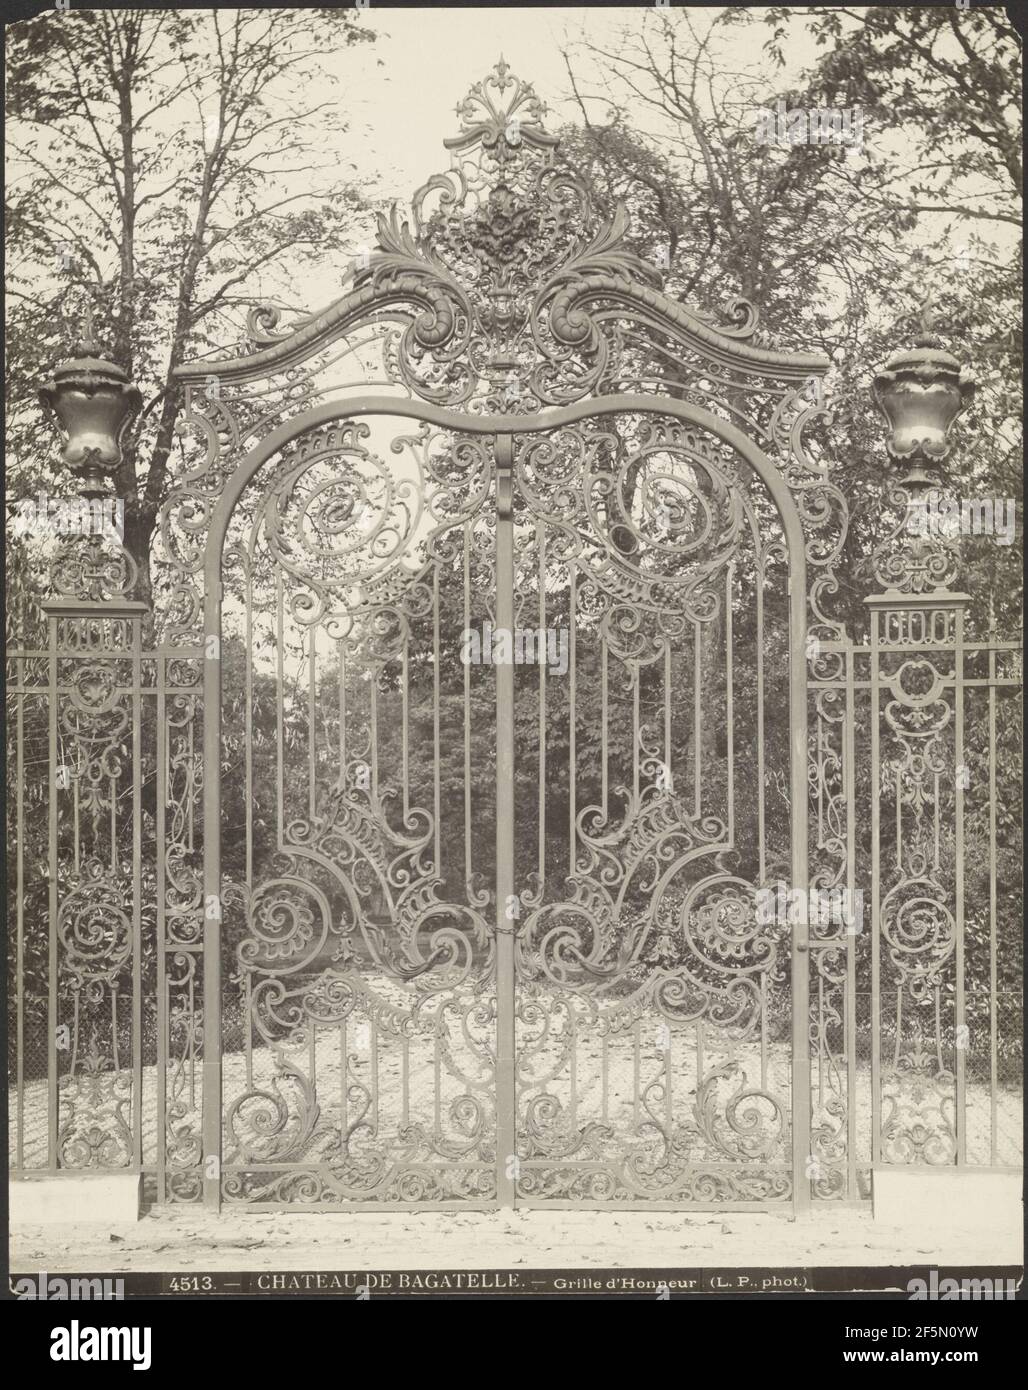 Chateau de Bagatelle - Grille d'Honneur. Louis Parnard (French, 1840 - 1893  Stock Photo - Alamy